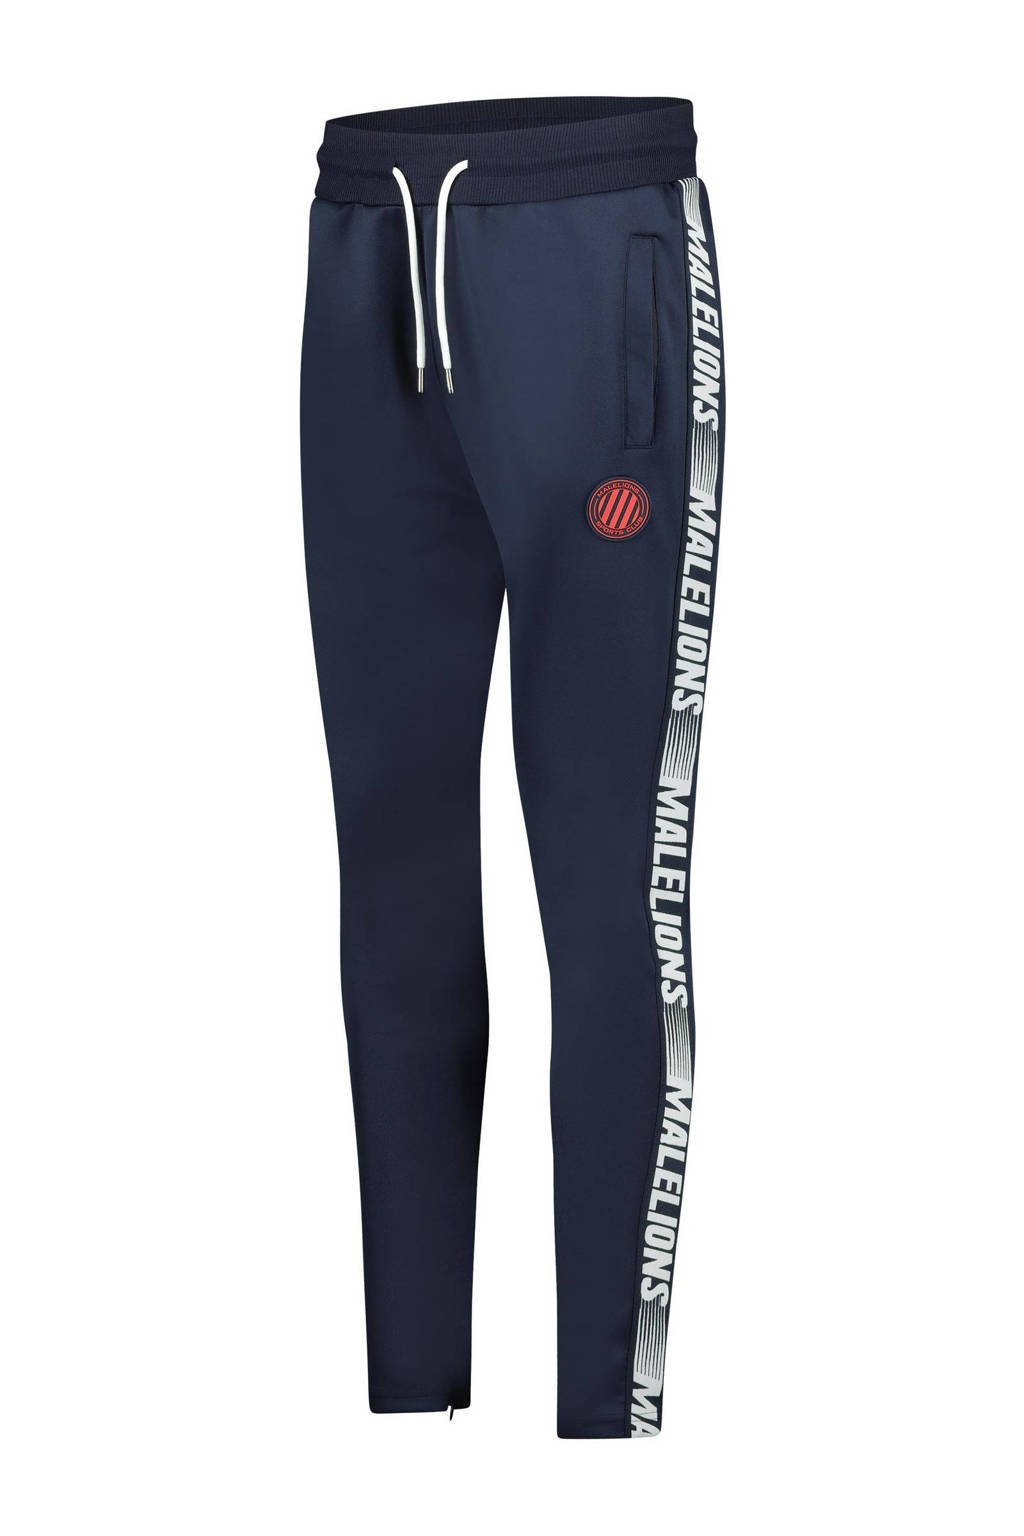 Malelions tapered fit joggingbroek Trackpants Striker met zijstreep blauw/wit/rood, Blauw/wit/rood